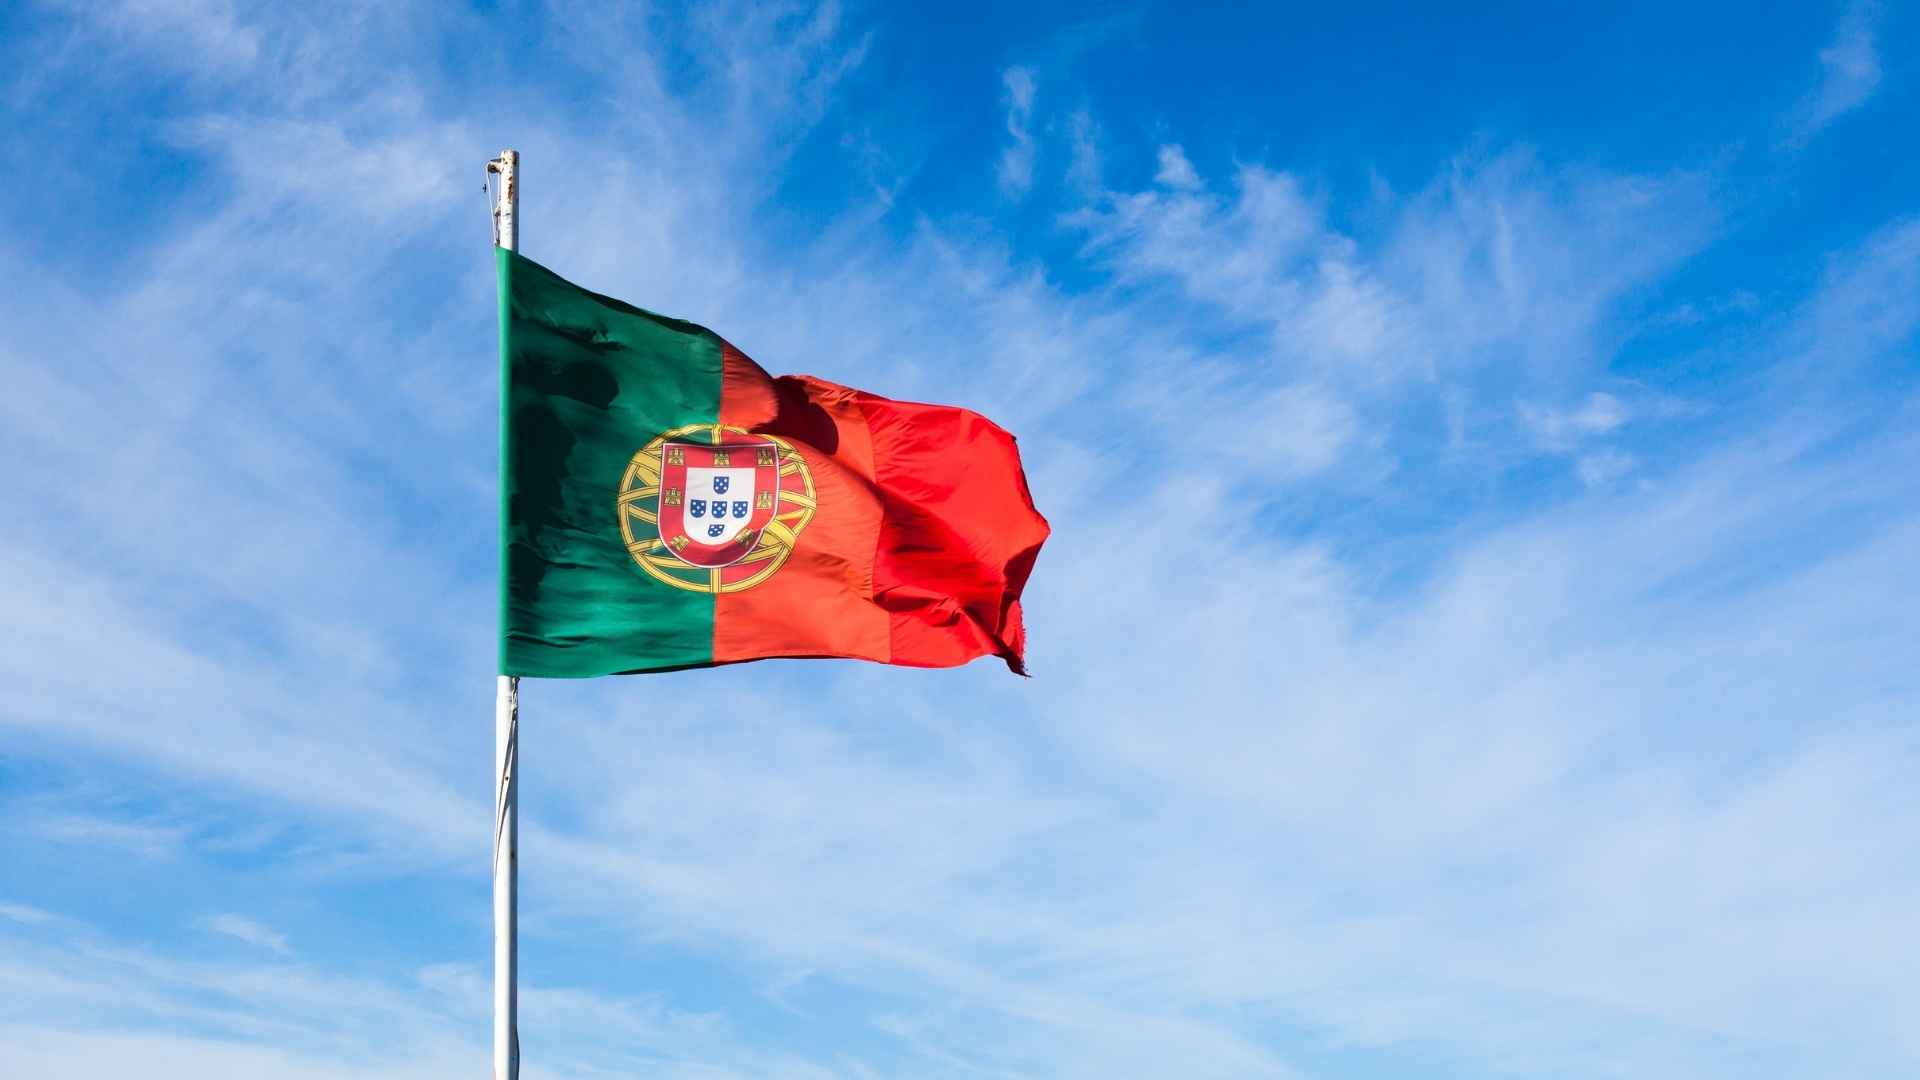 אזרחות פורטוגלית